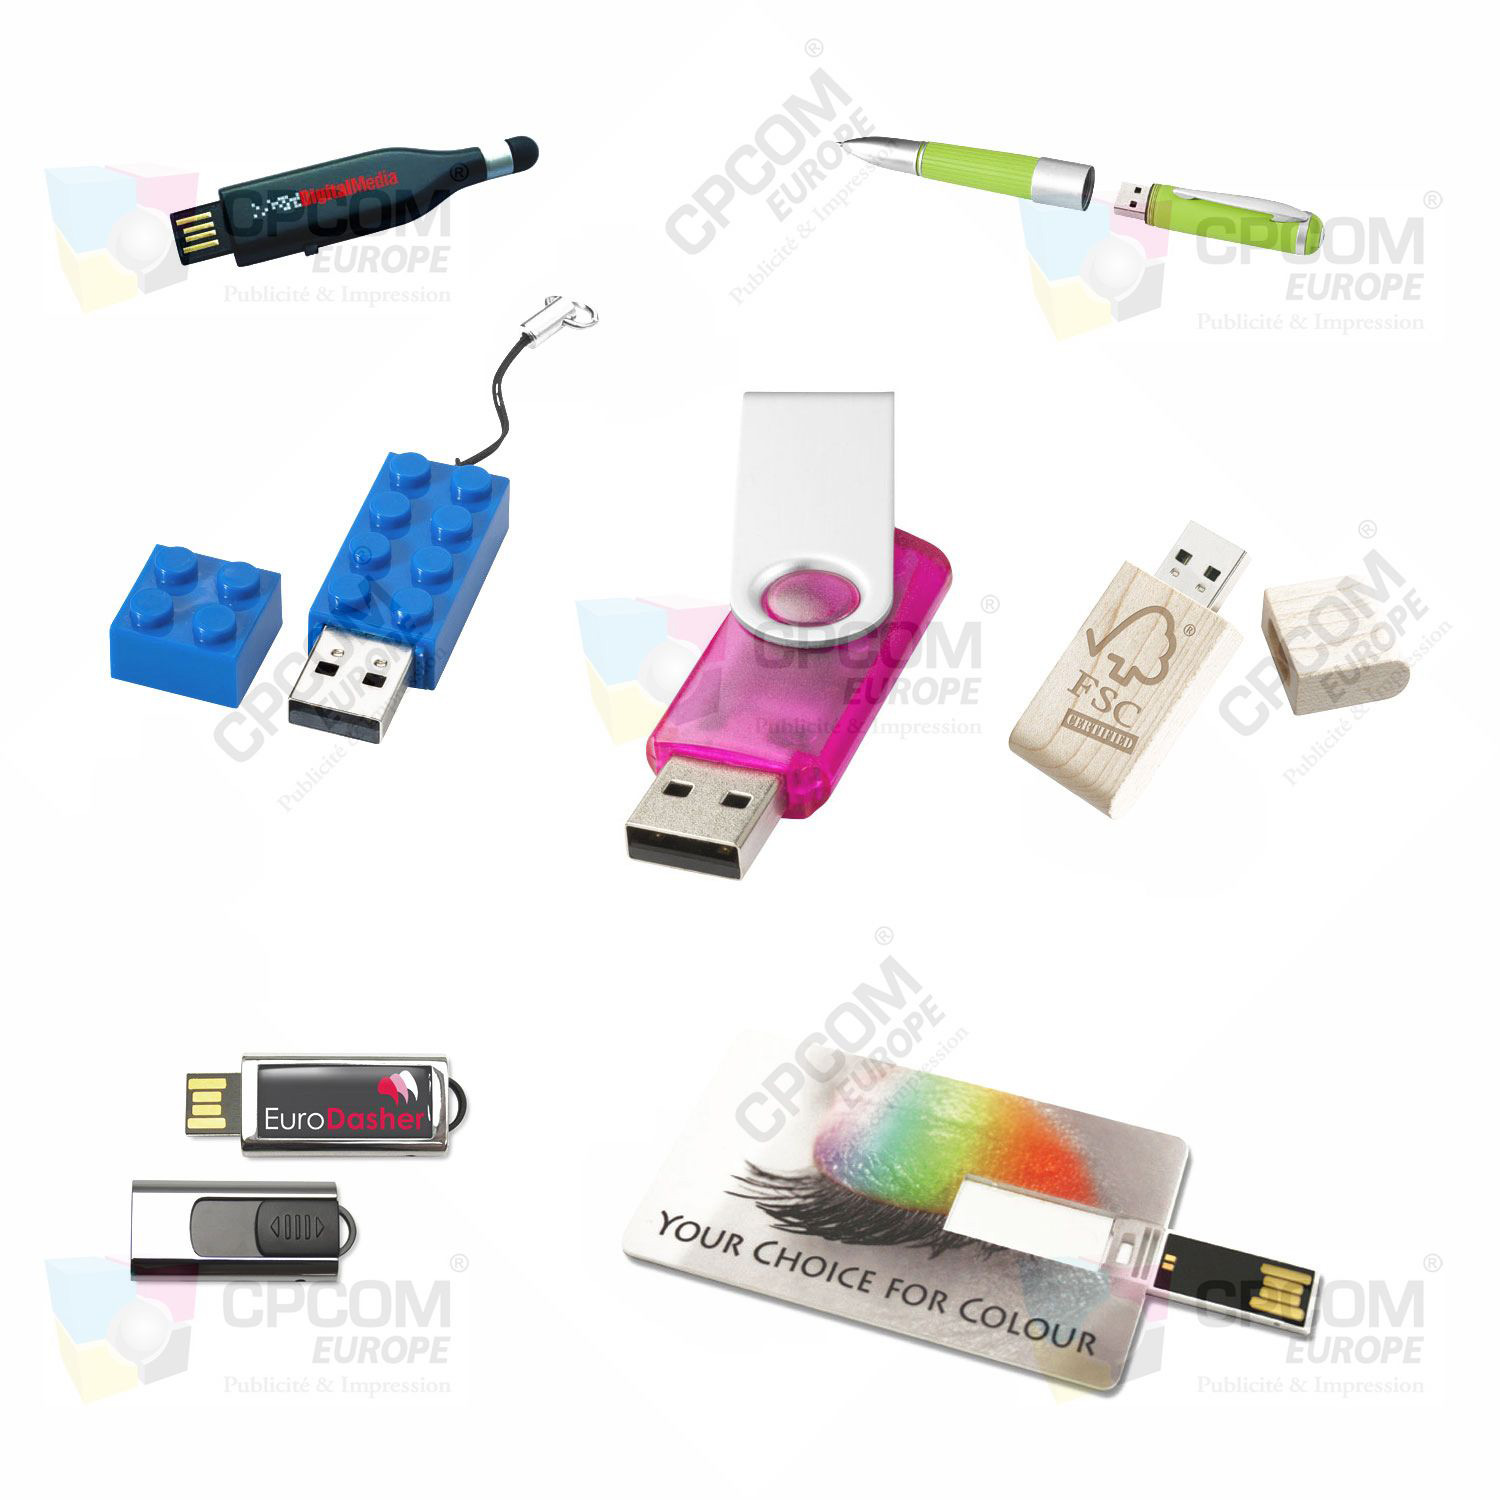 Clé USB personnalisable CPCOM Europe